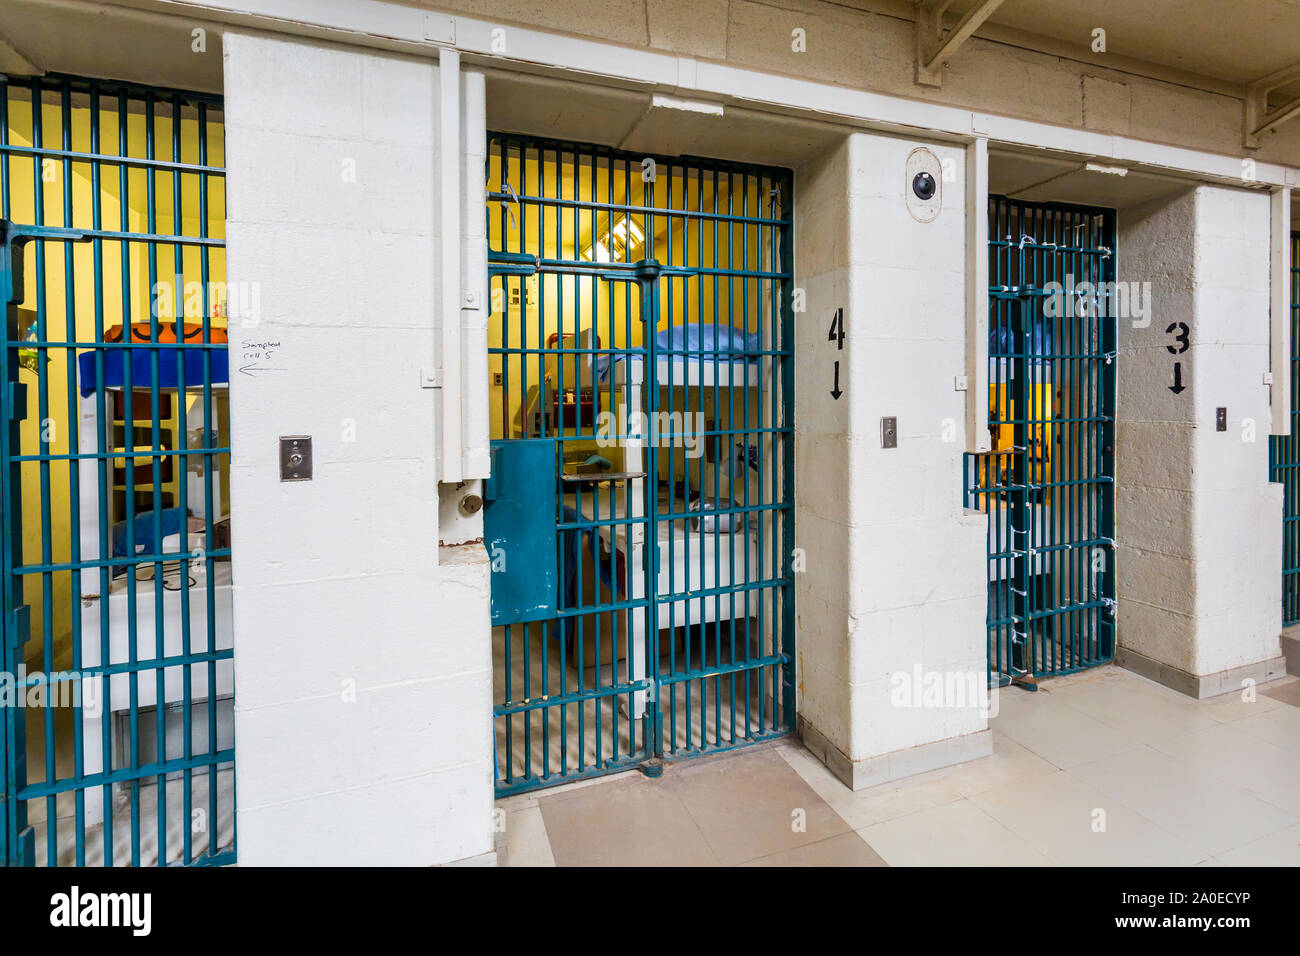 Fila di porte di celle di prigione Kingston Penitentiary un ex prigione di massima sicurezza che ha aperto giugno 1835 e chiuso settembre 2013 Foto Stock